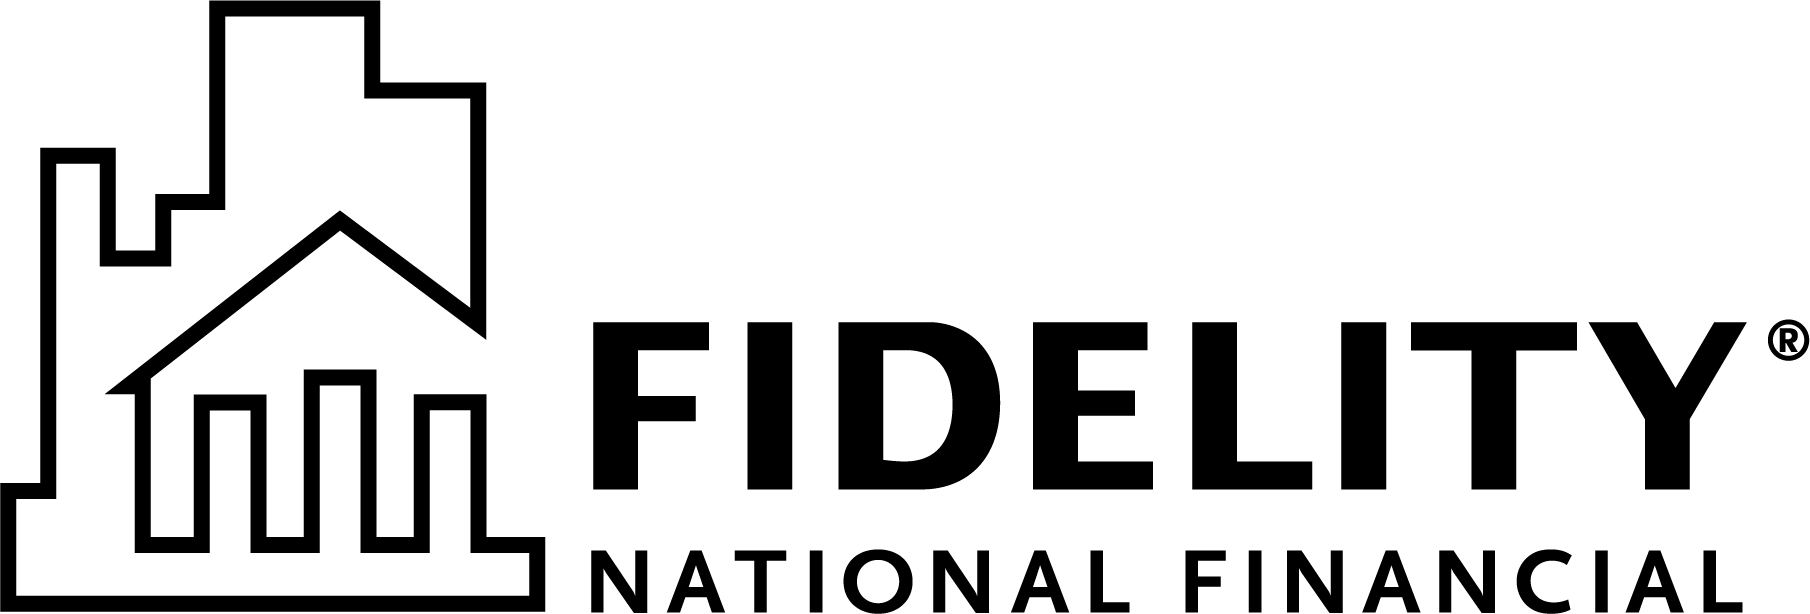 FNF-logo-rev-dark